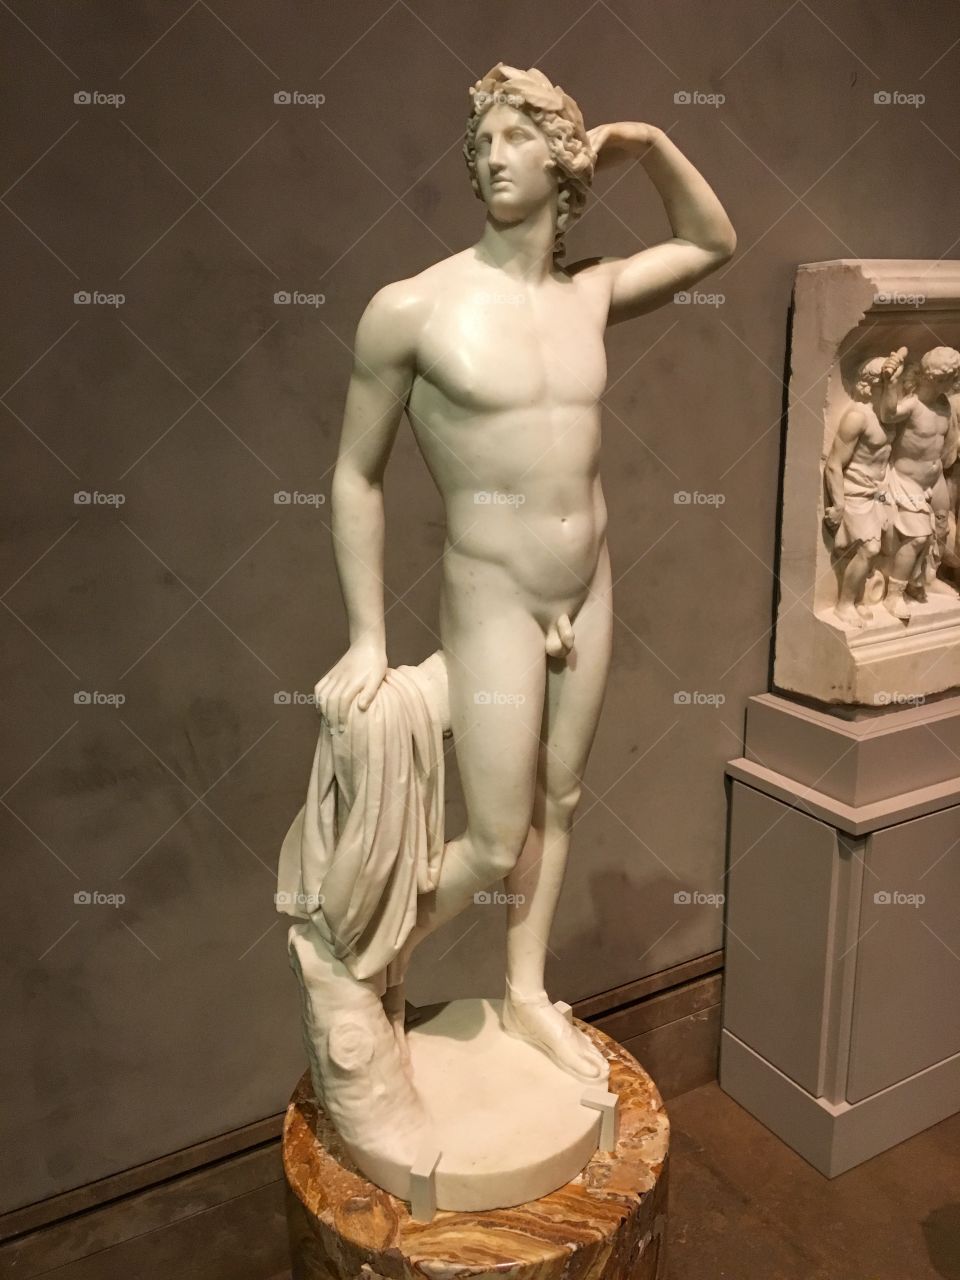 Apollo Statue at The Getty